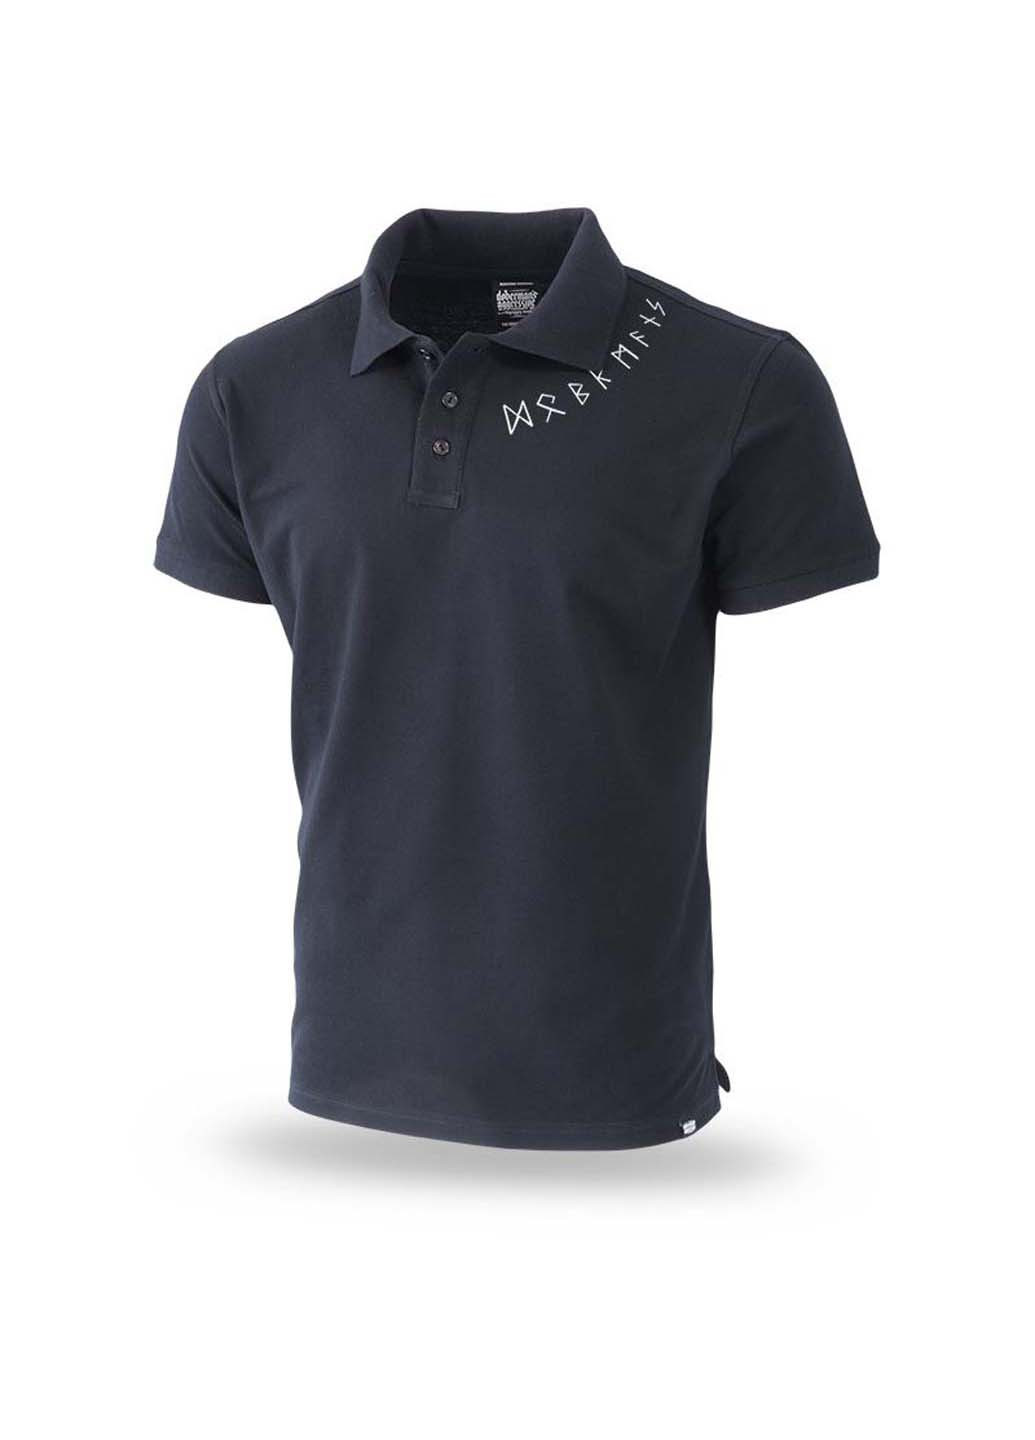 Черная футболка-футболка поло для мужчин Dobermans Aggressive